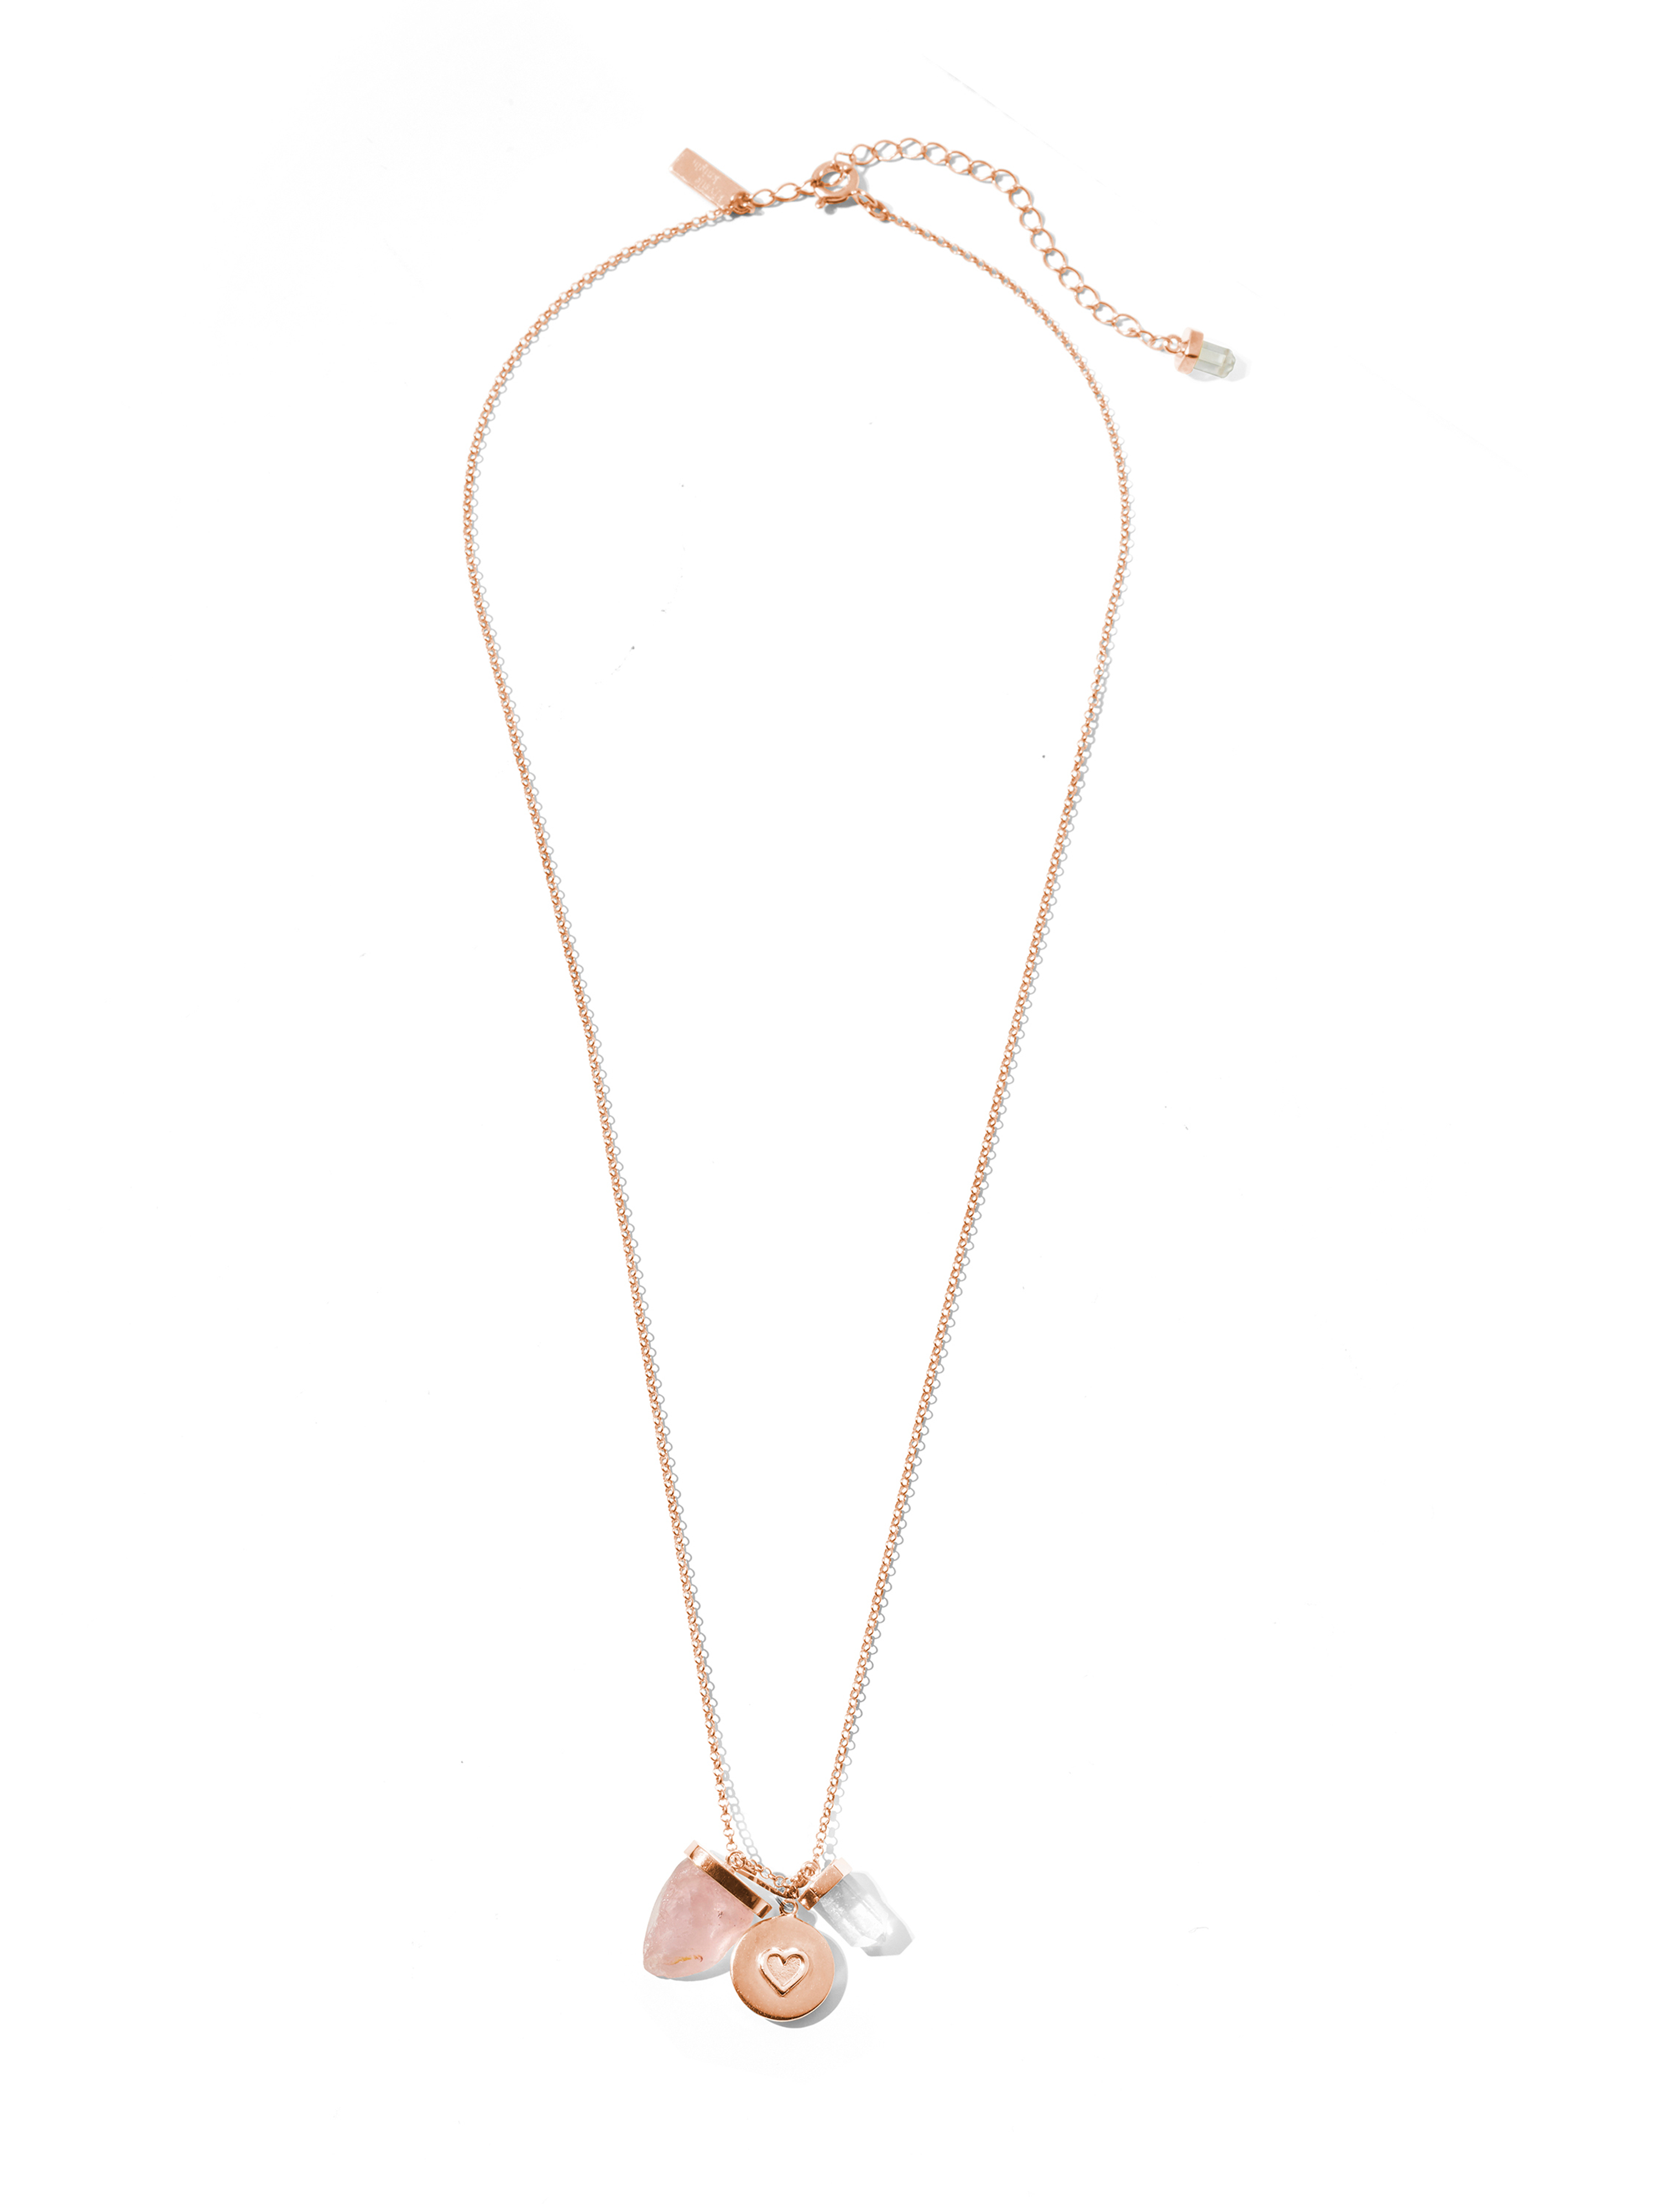 eternal love necklace | rose quartz, clear quartz + heart